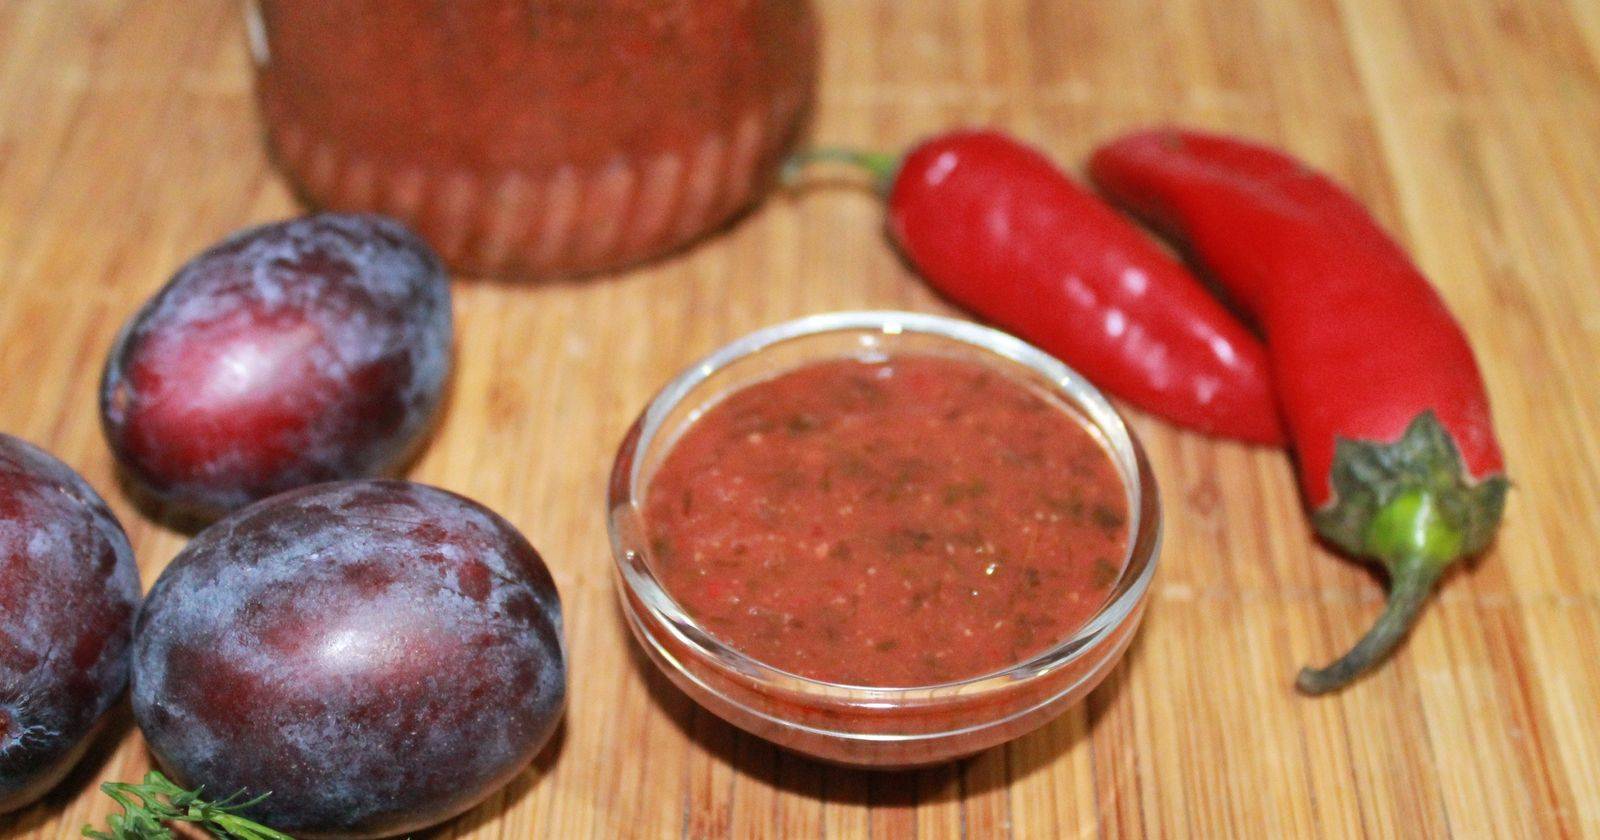 Рецепт соуса ткемали по-грузински из алычи и по-русски из слив, киви, томатов, абрикосов и яблок + отзывы